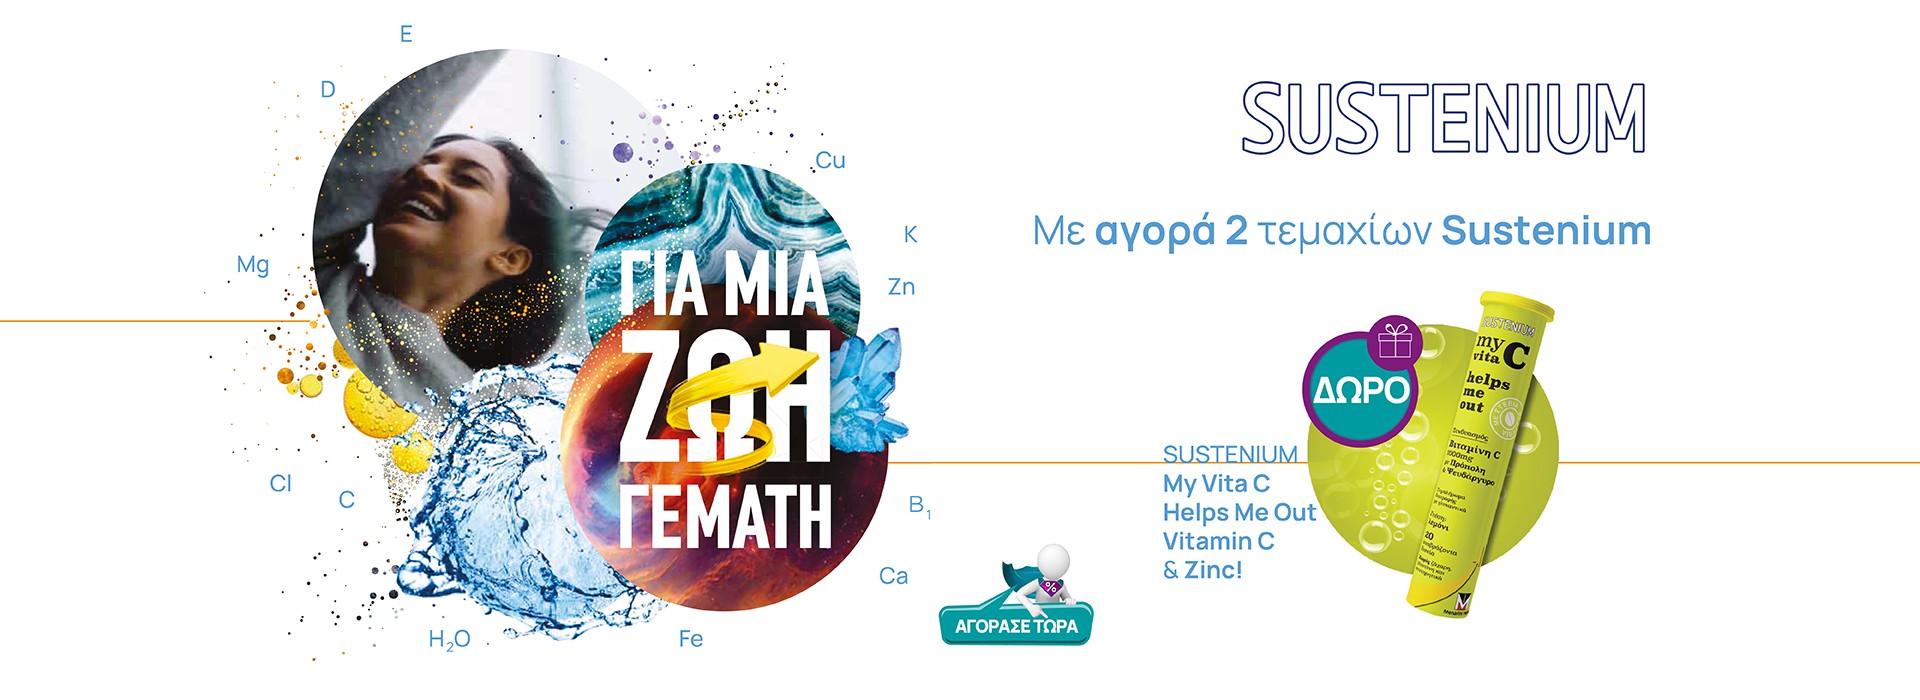 Sustenium promo Vitamin C - May